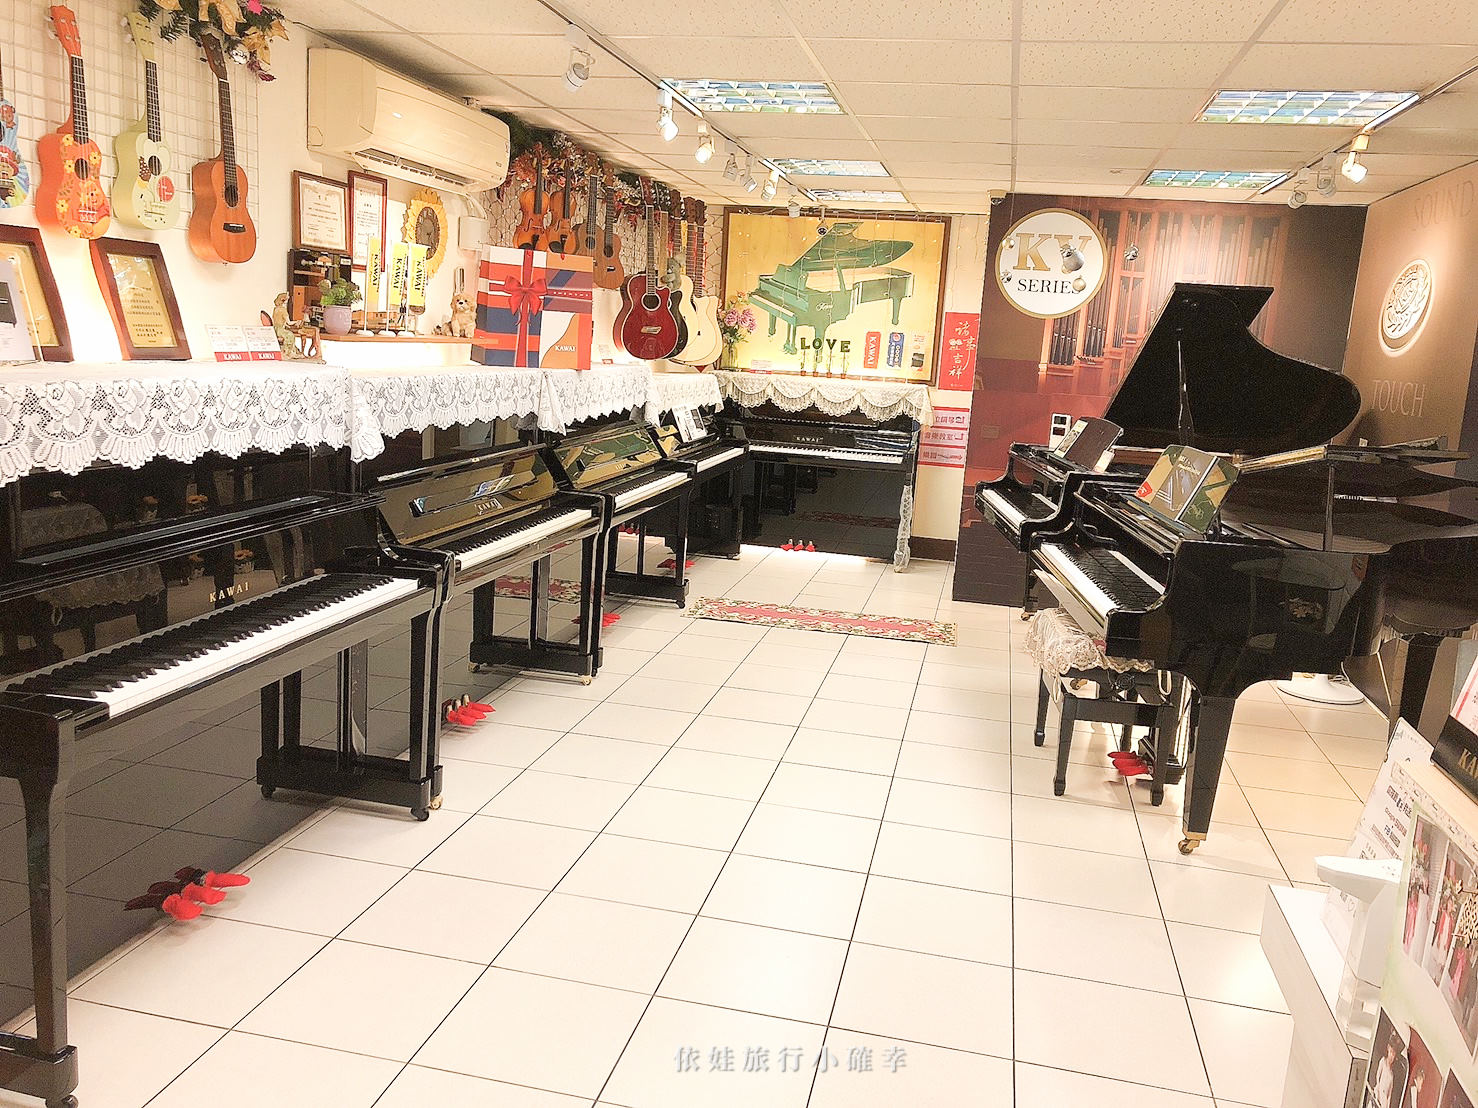 買電鋼琴推薦河合KAWAI PIANO CN-201W，北區直營特販中心板橋模範店